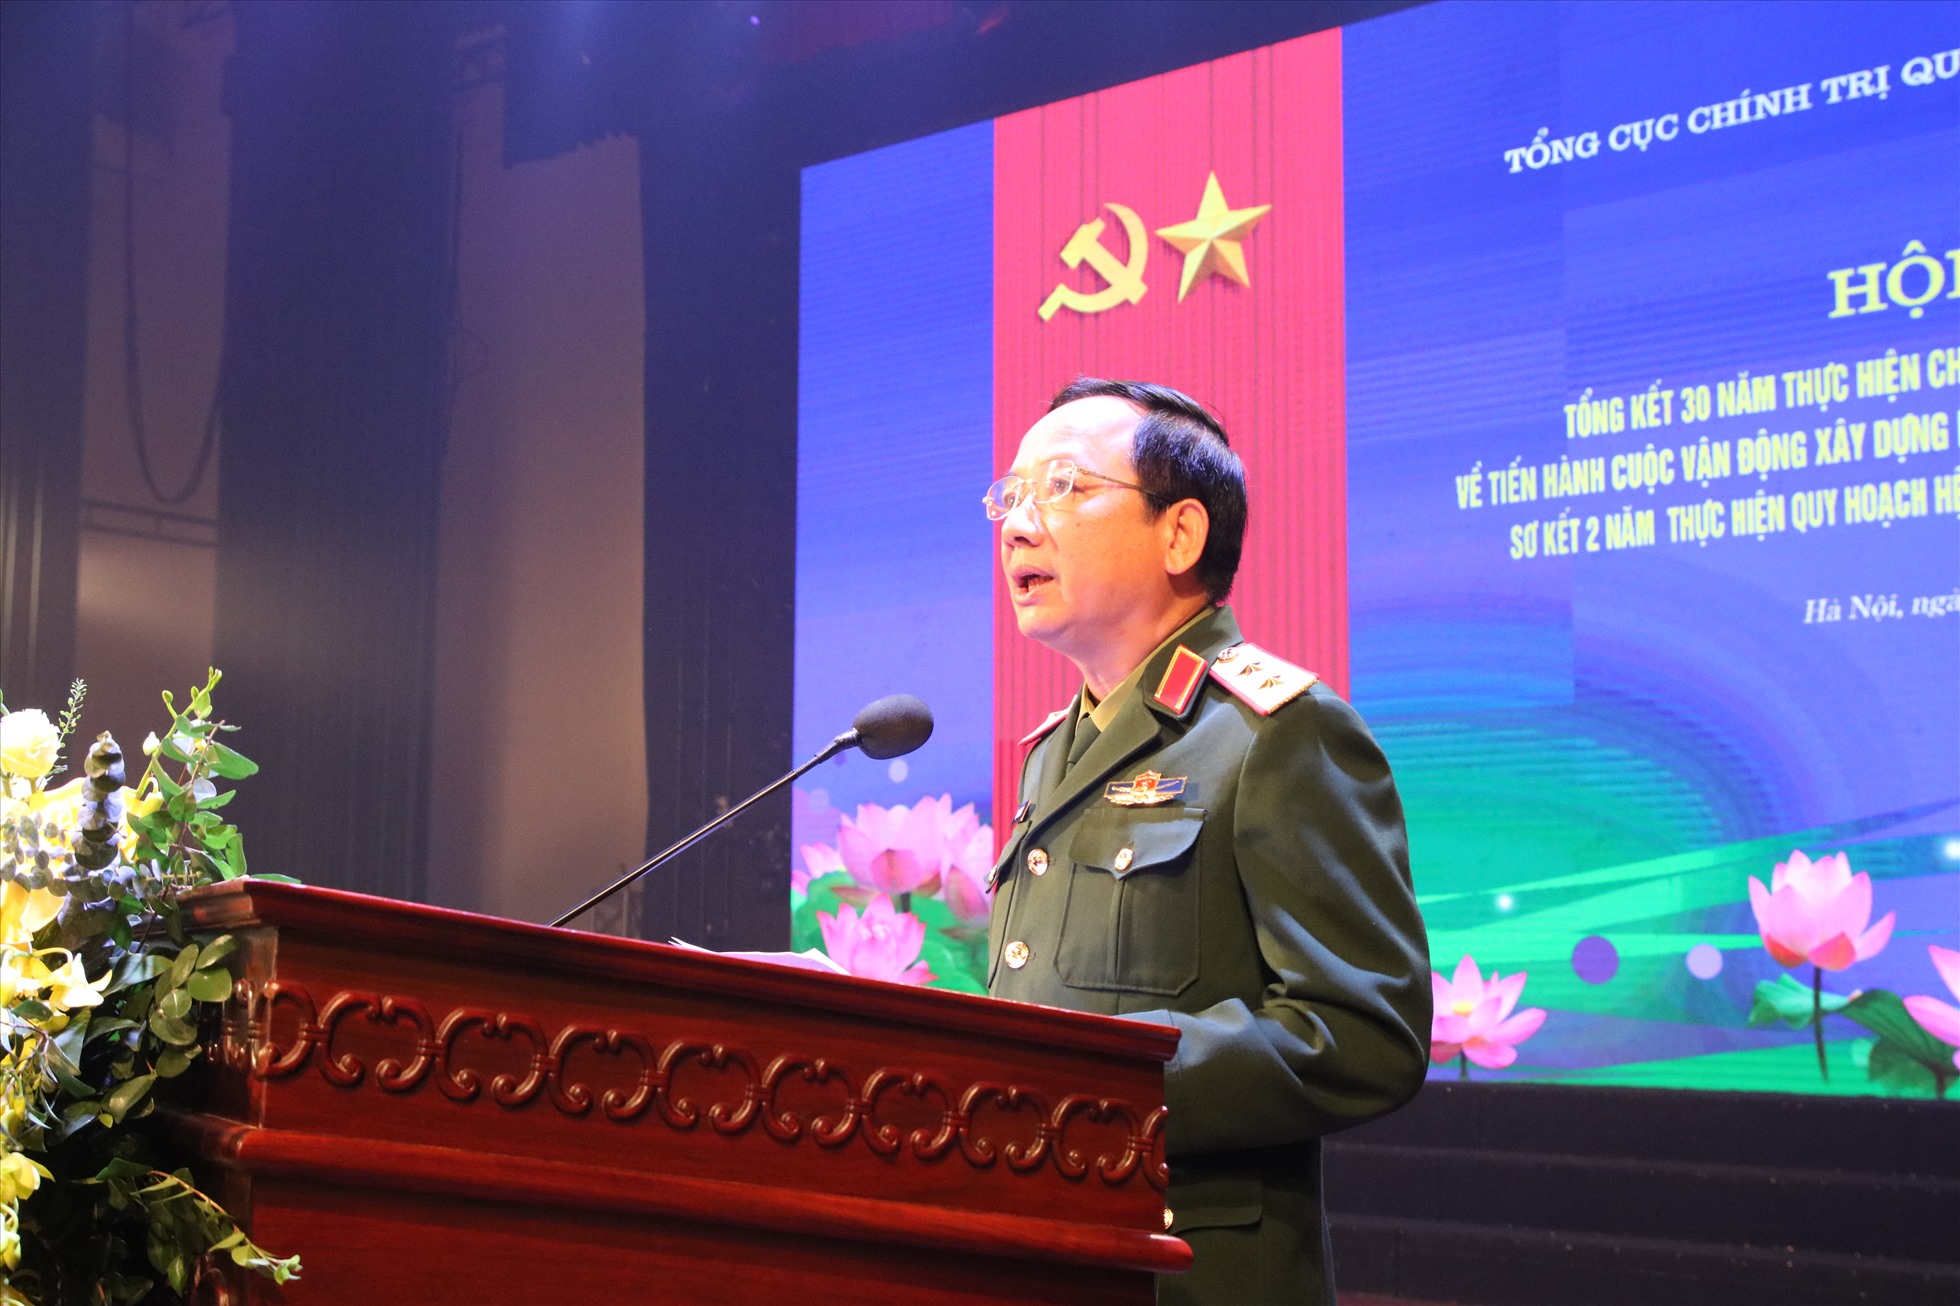 Trung tướng Trịnh Văn Quyết – Phó Chủ nhiệm Tổng Cục Chính trị. Ảnh: T.Vương